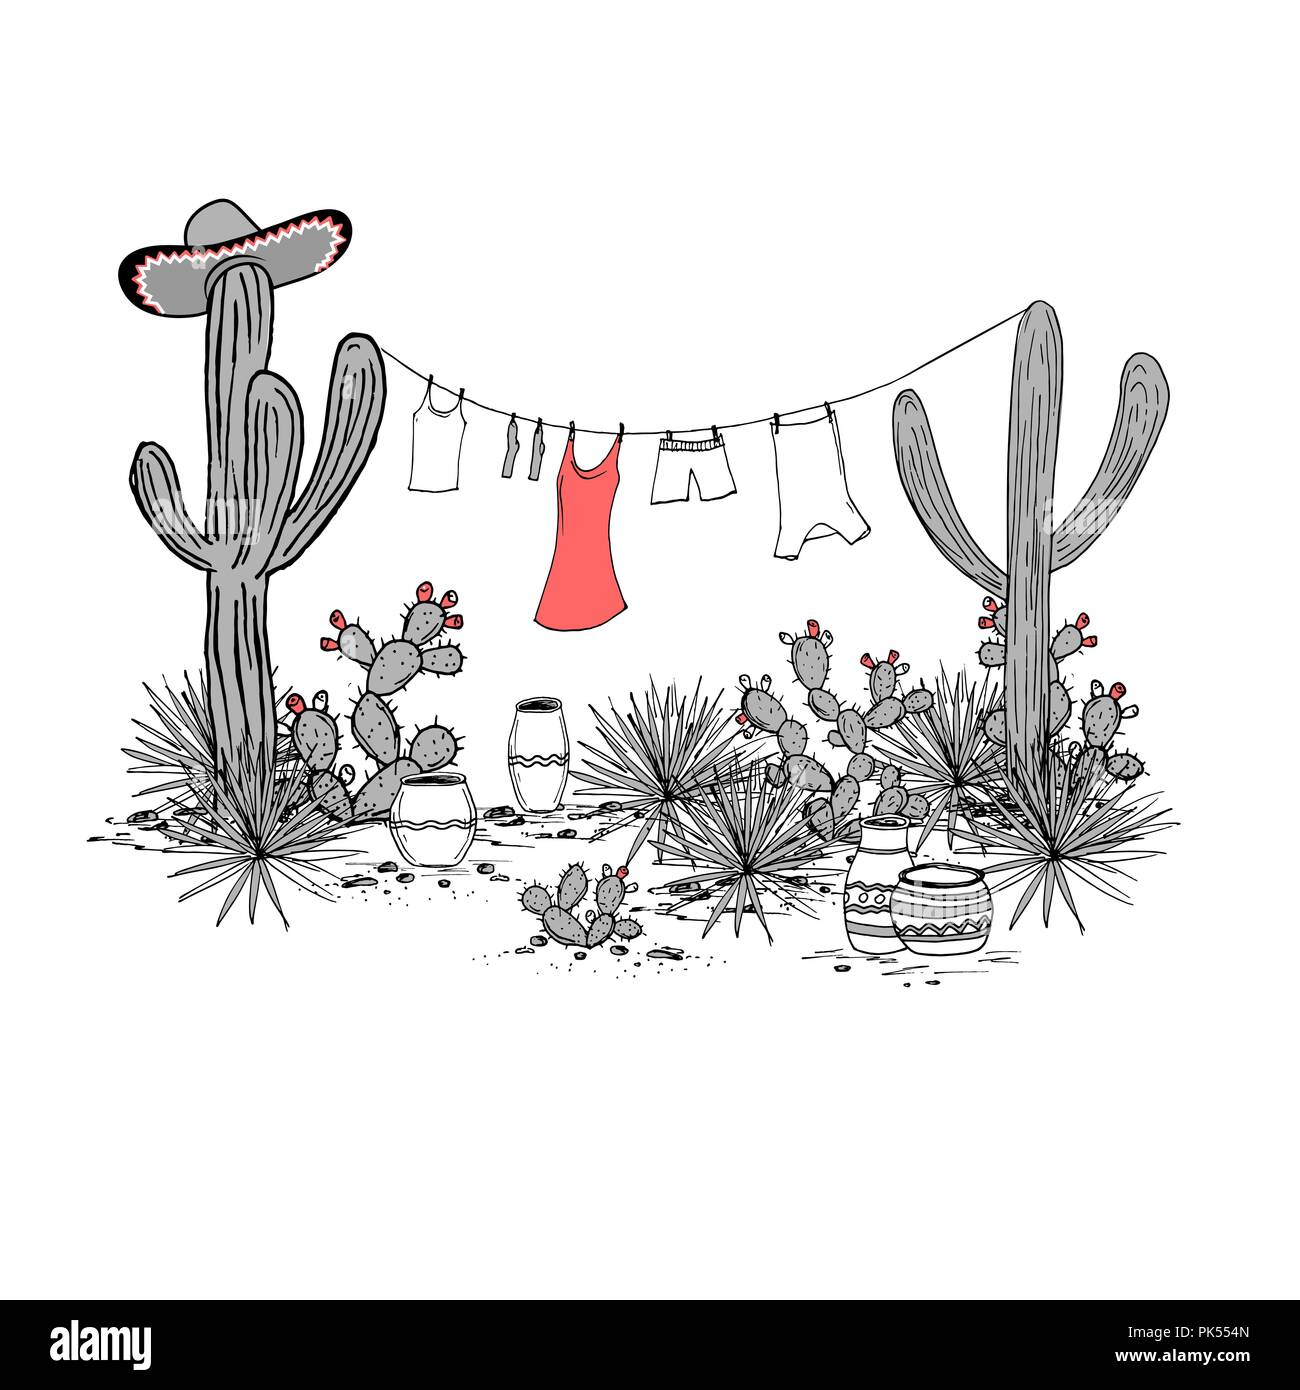 Funny disegnati a mano illustraytion con vasi, saguaro, agave blu, fichidindia sombrero, e servizio lavanderia appeso su uno stendibiancheria. Latin American background. Paesaggio messicano. Illustrazione Vettoriale